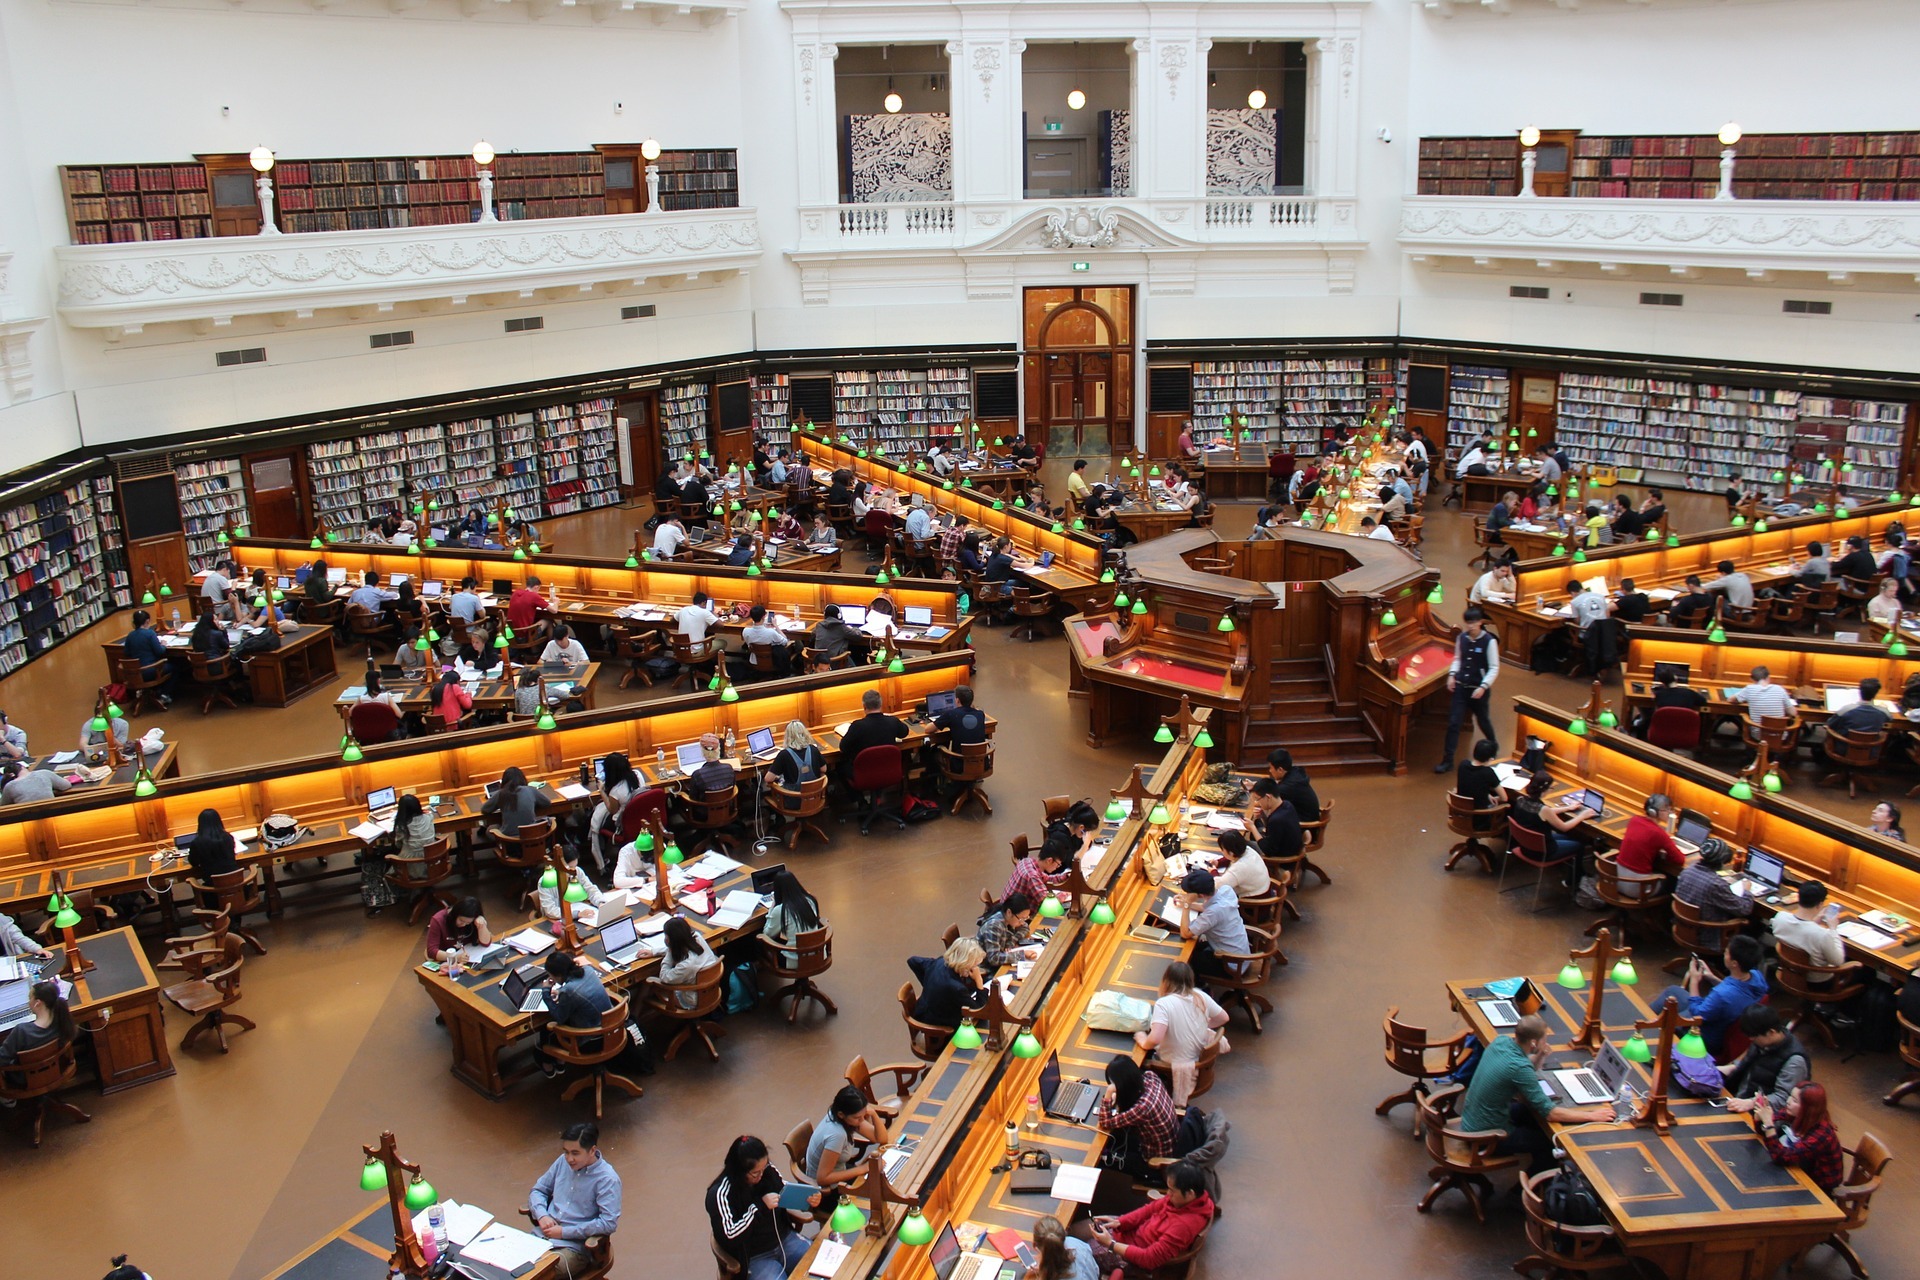 Biblioteka na uczelni jest miejscem gdzie można spotkać wielu studentów z różnych kierunków w szkocji